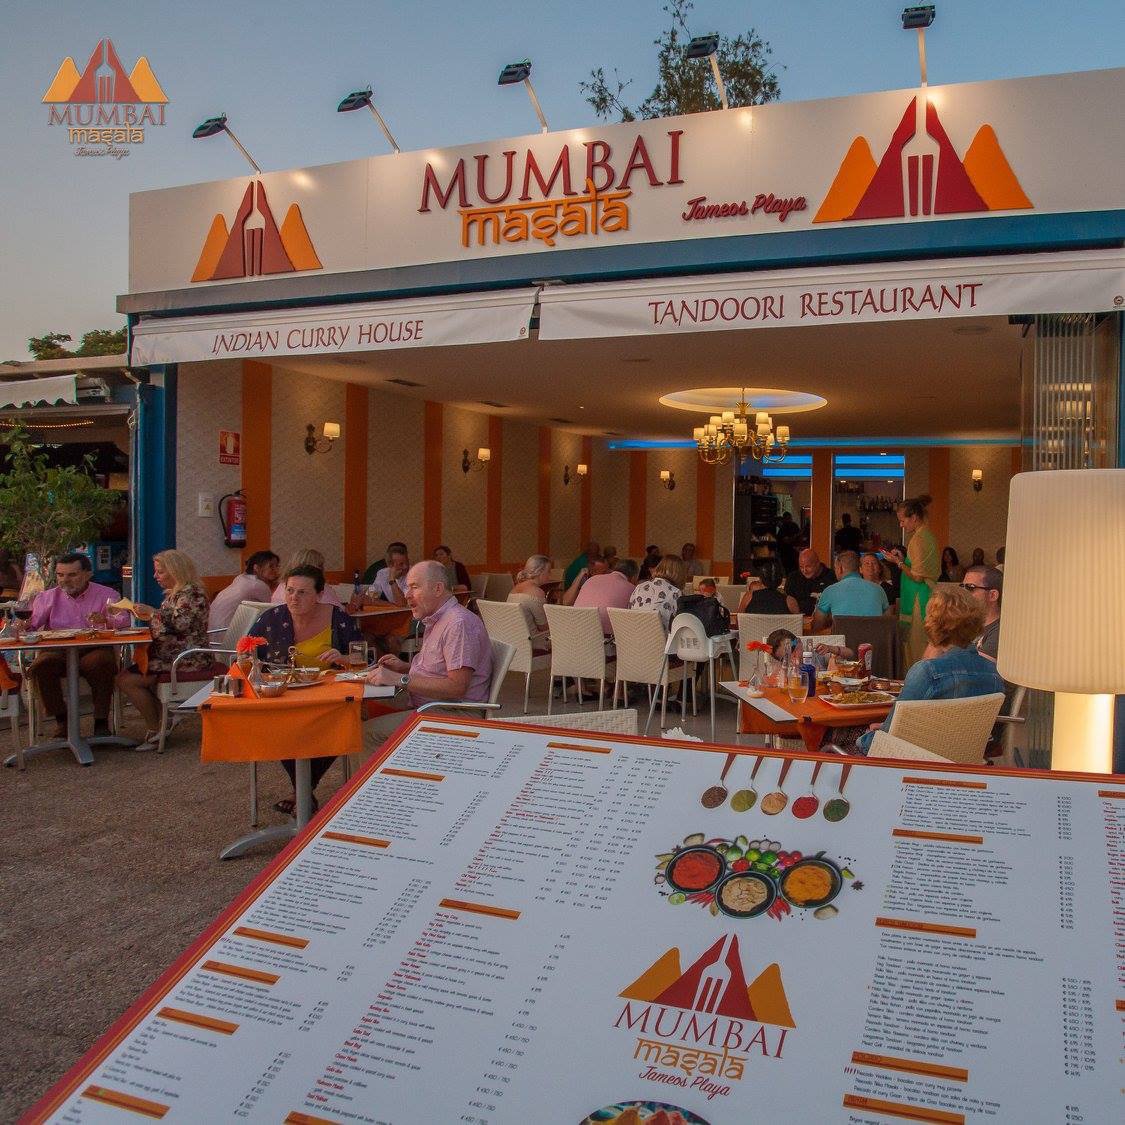 مطعم مومباي ماسالا جاميوس بلايا